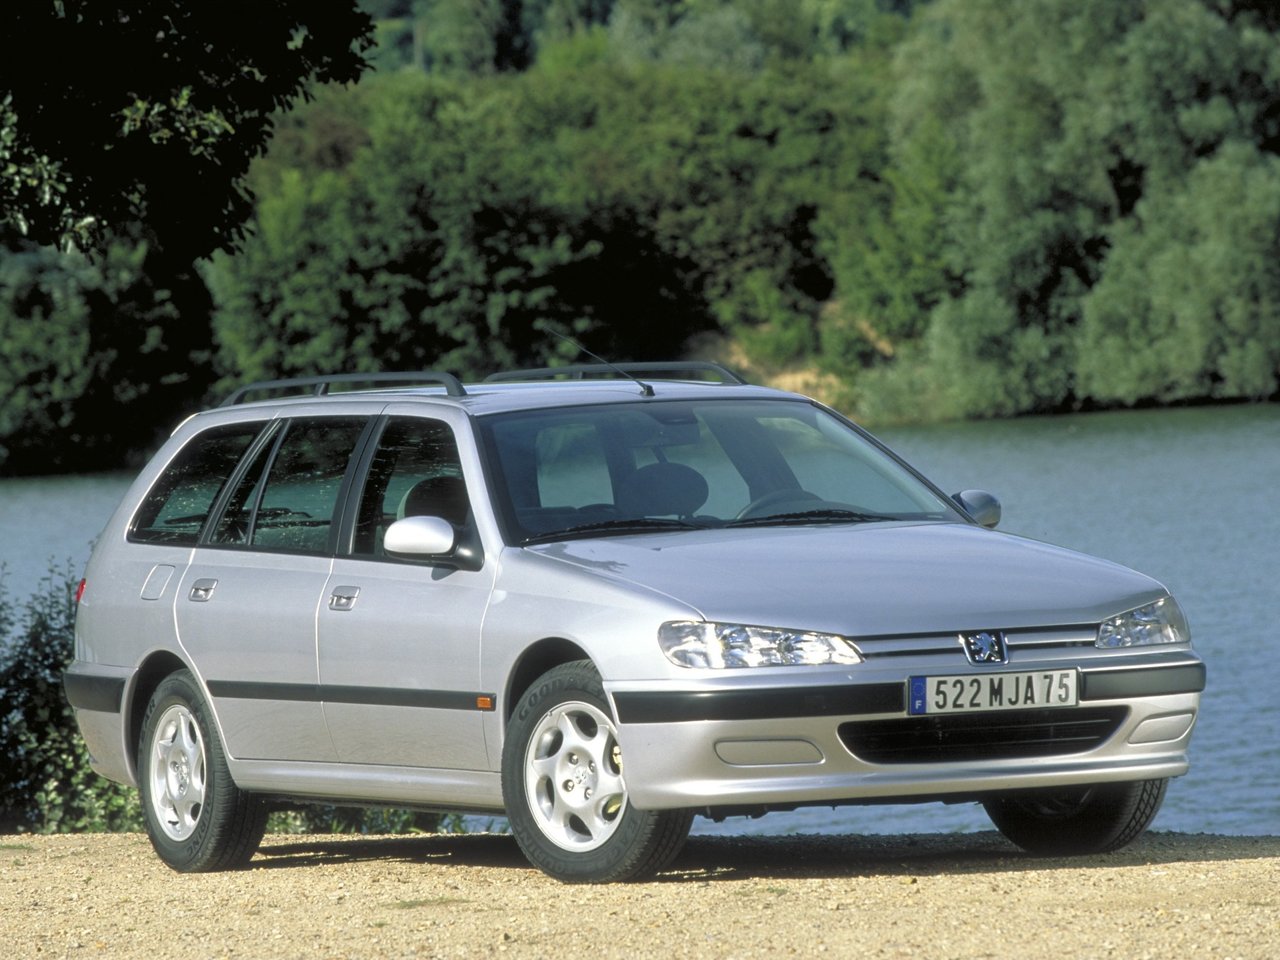 Расход газа четырёх комплектаций универсала пять дверей Peugeot 406. Разница стоимости заправки газом и бензином. Автономный пробег до и после установки ГБО.